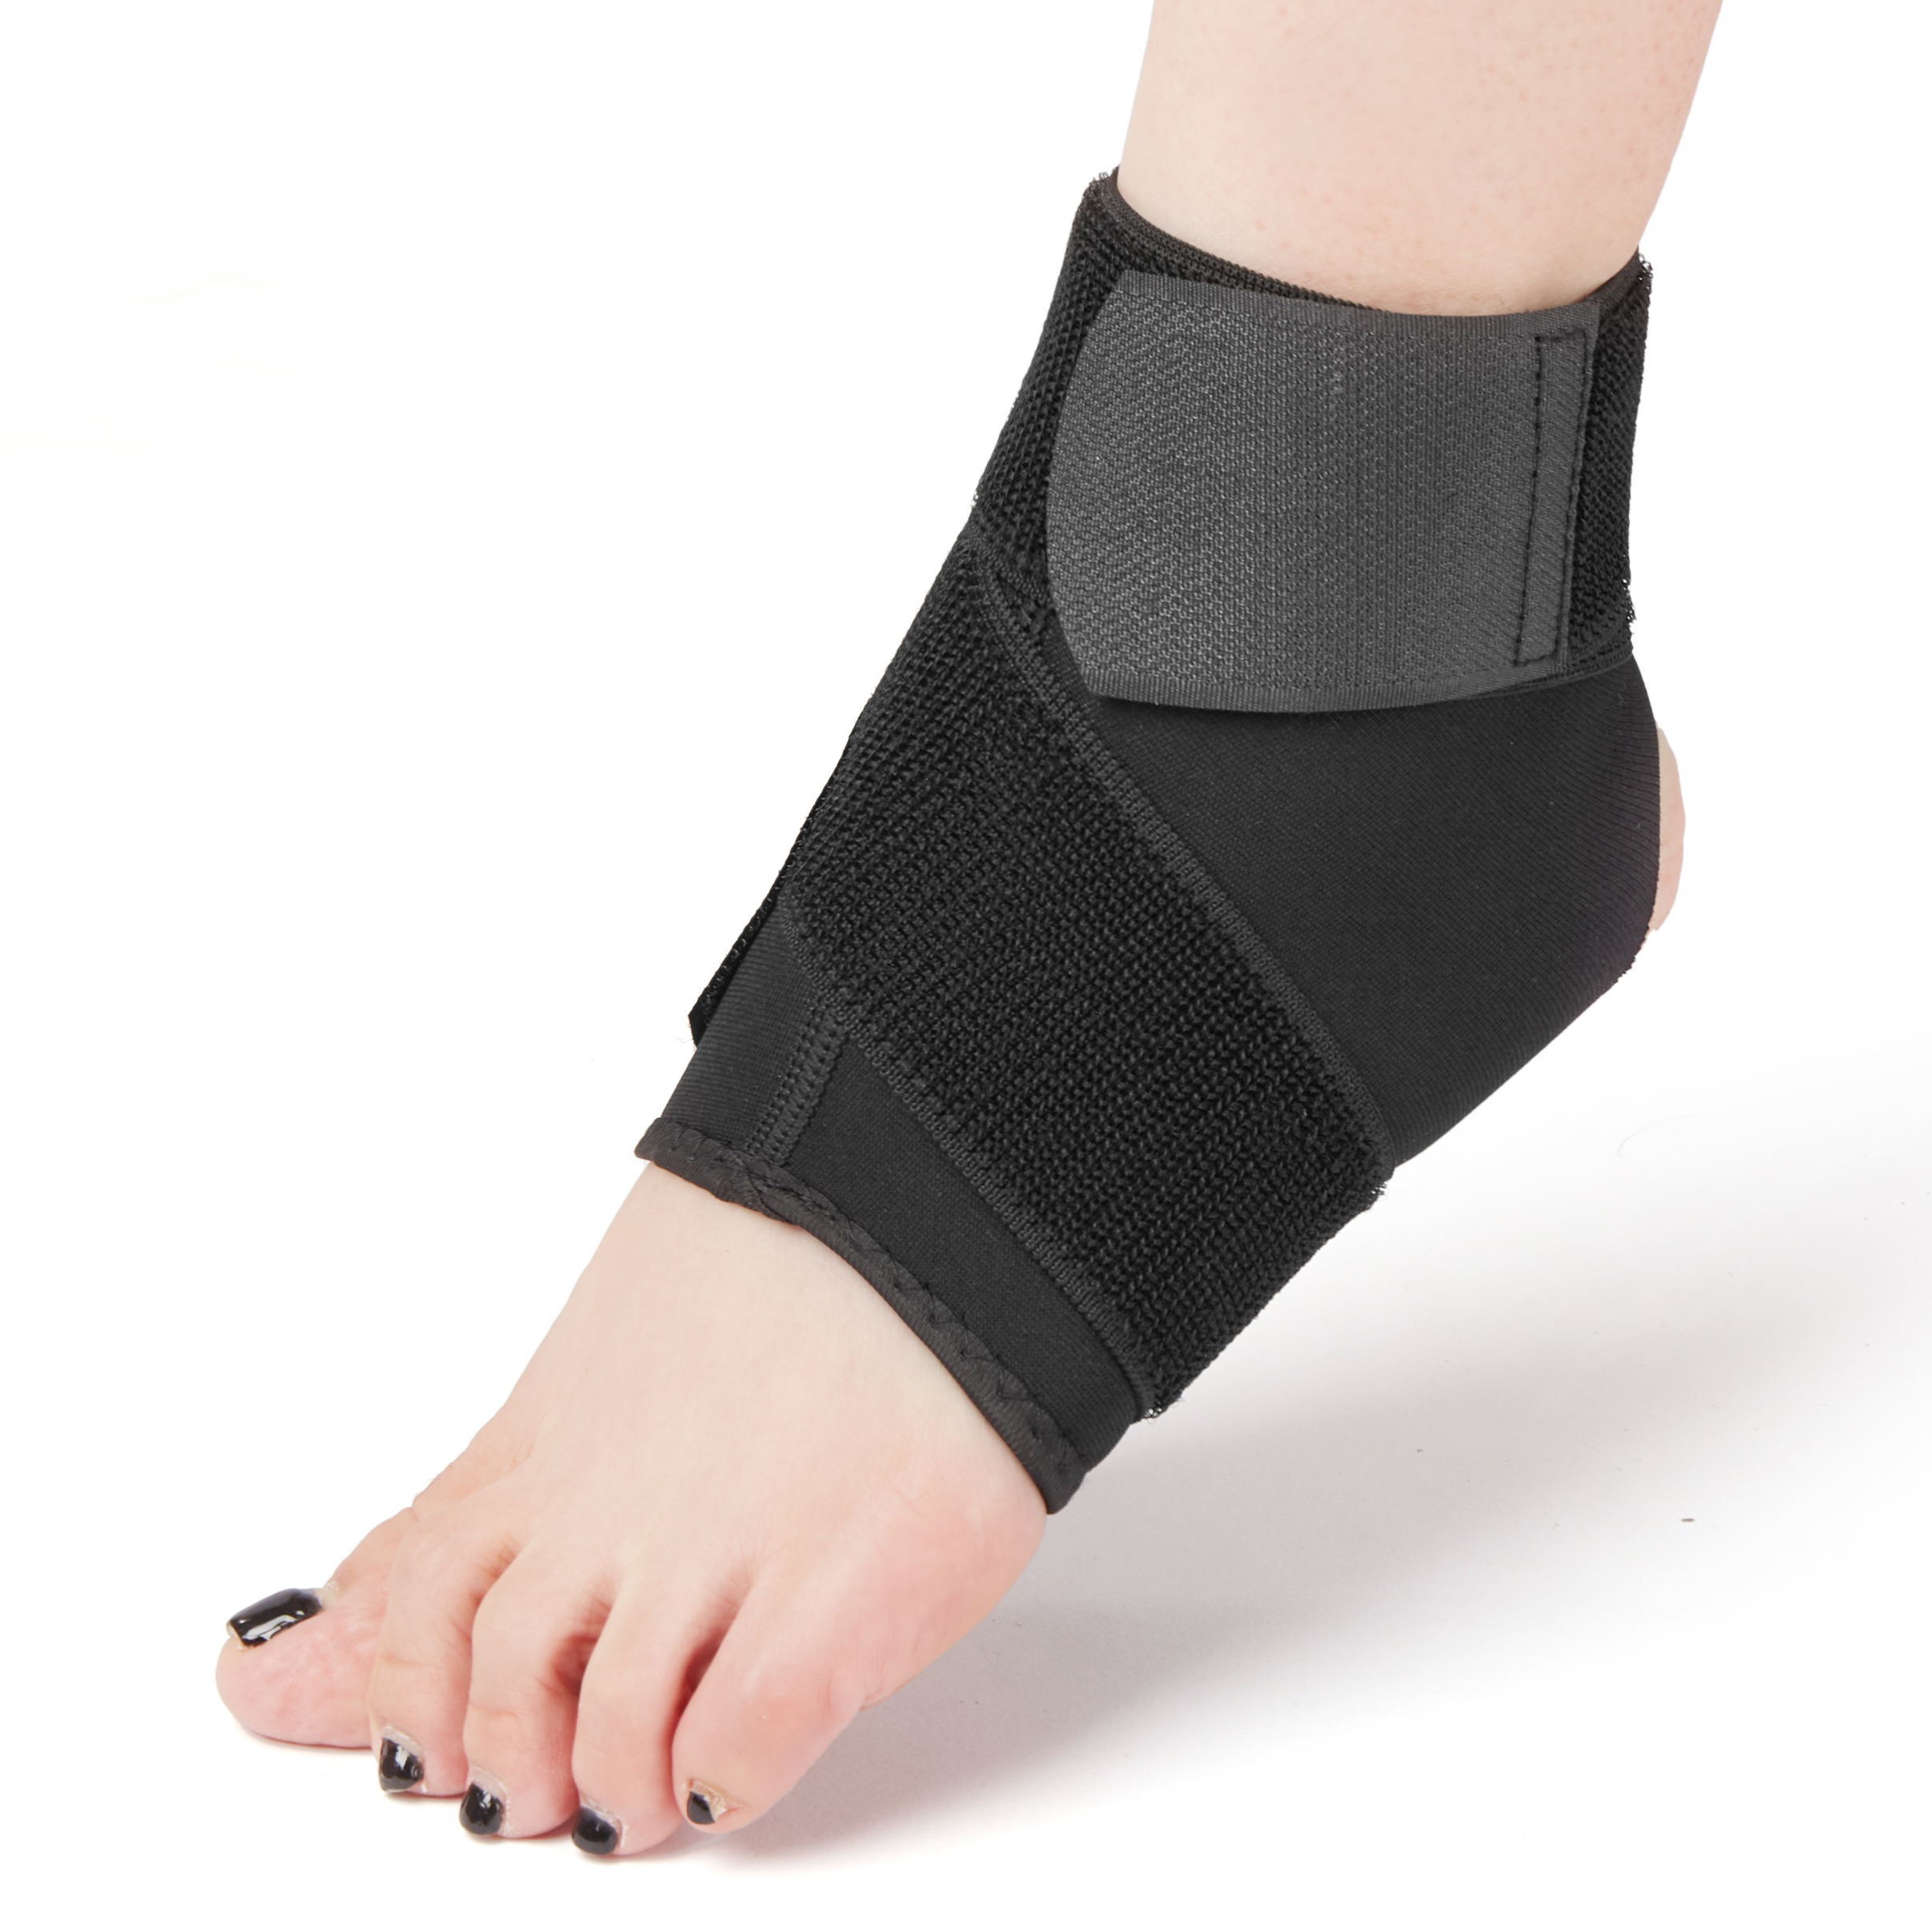 Neoprene Traspirante Regolabile Compressione Ankle Guard